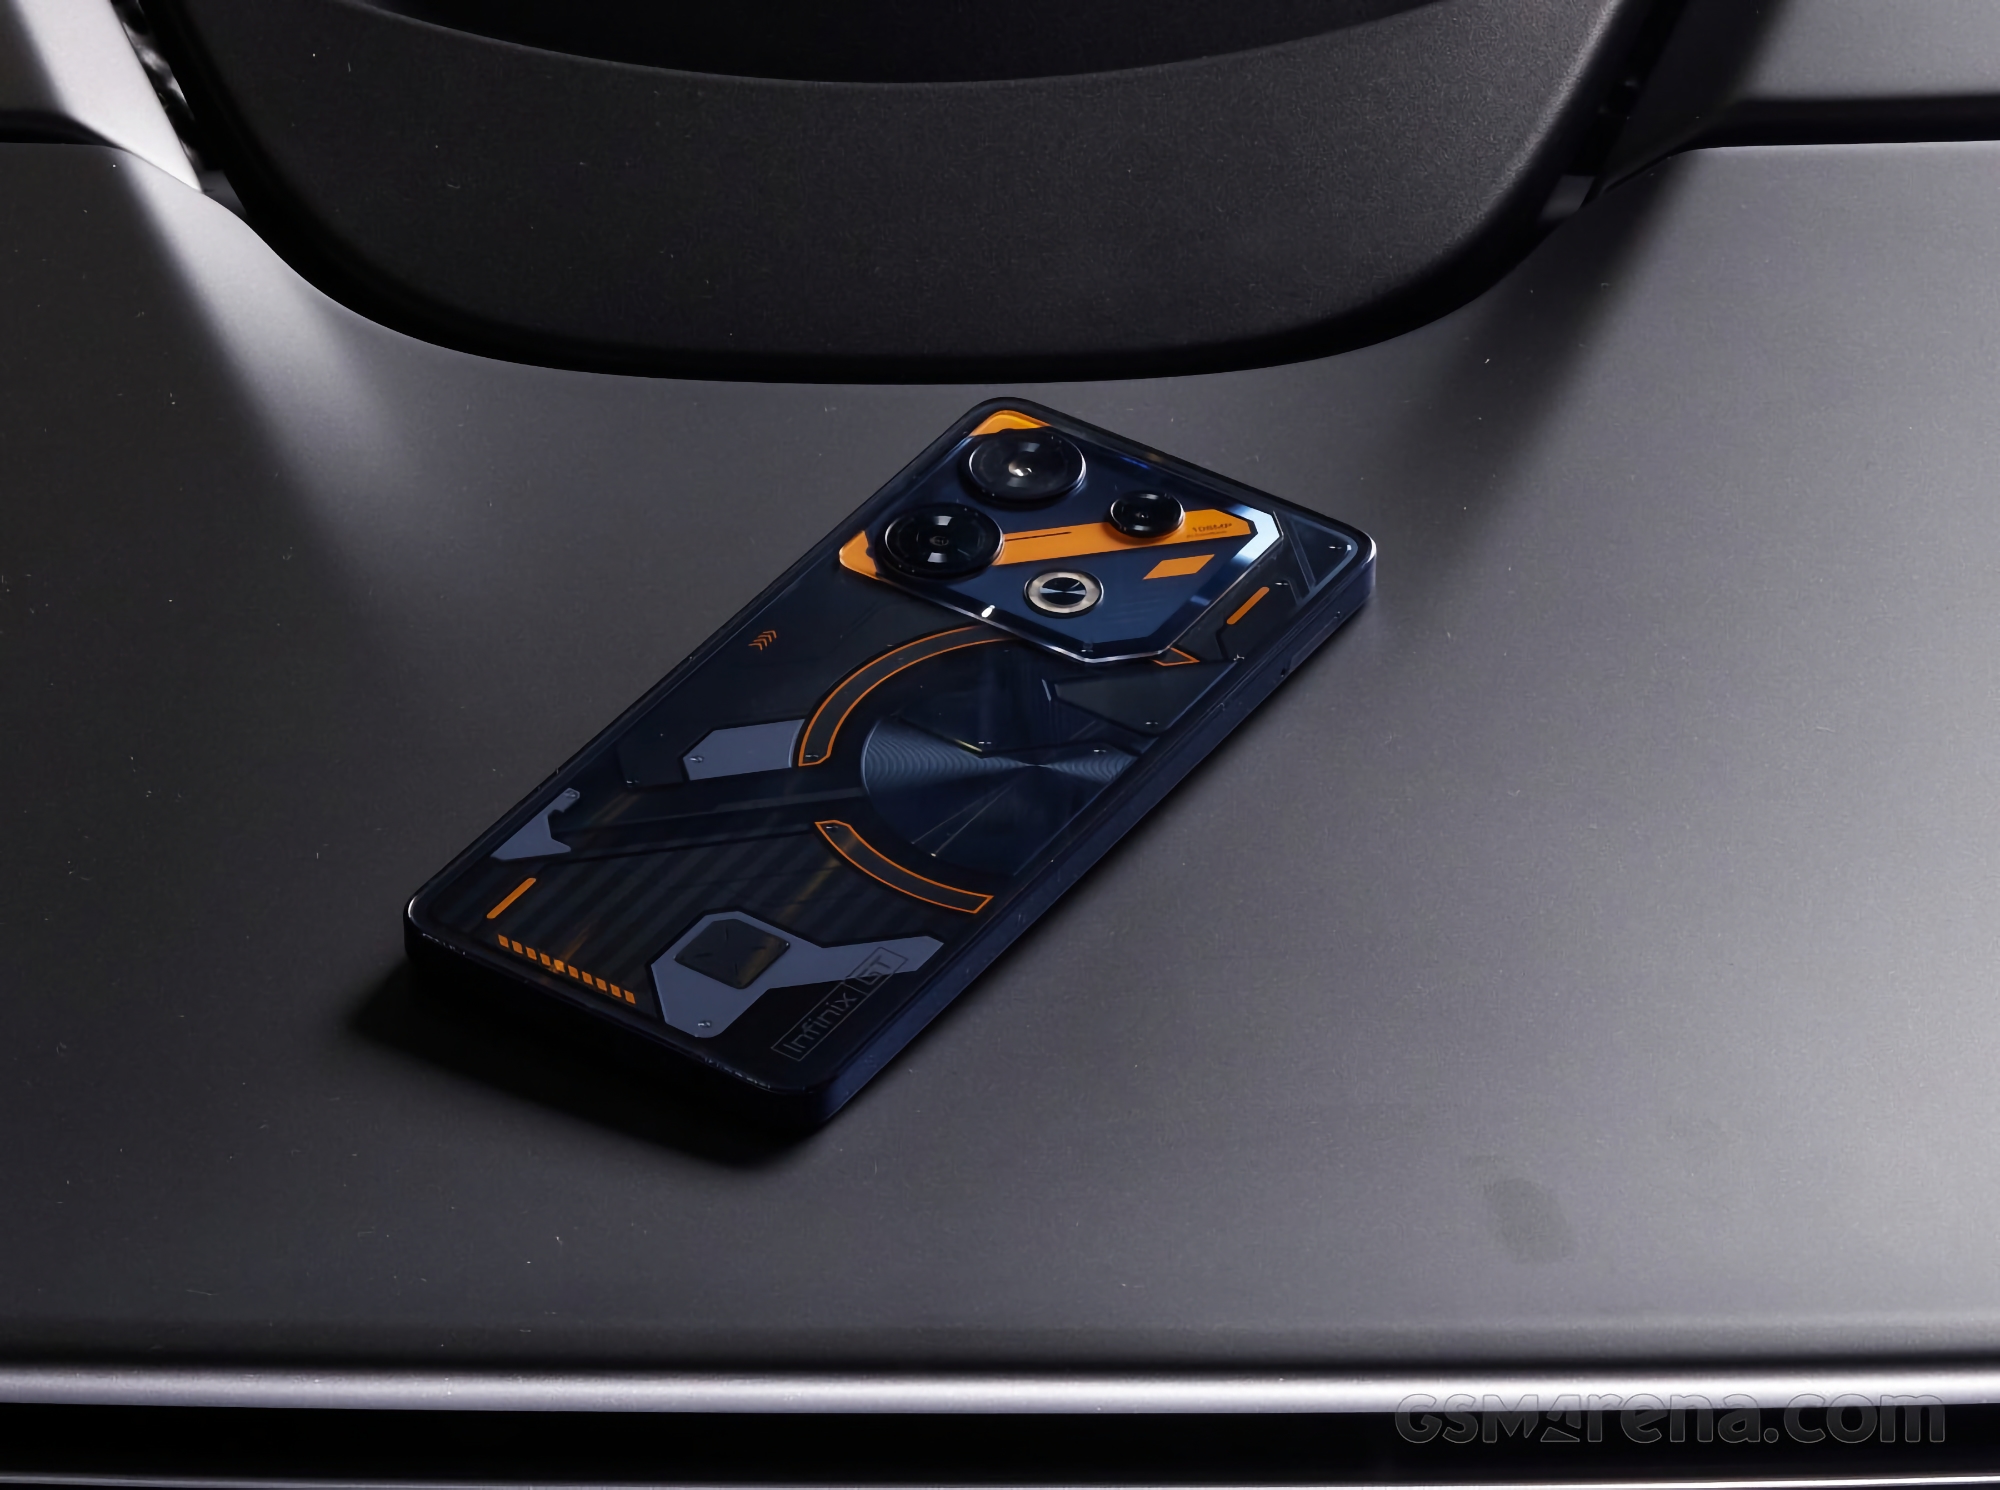 Slik kommer Infinix GT 10 Pro til å se ut: en gaming-smarttelefon med design som Nothing Phone 2.